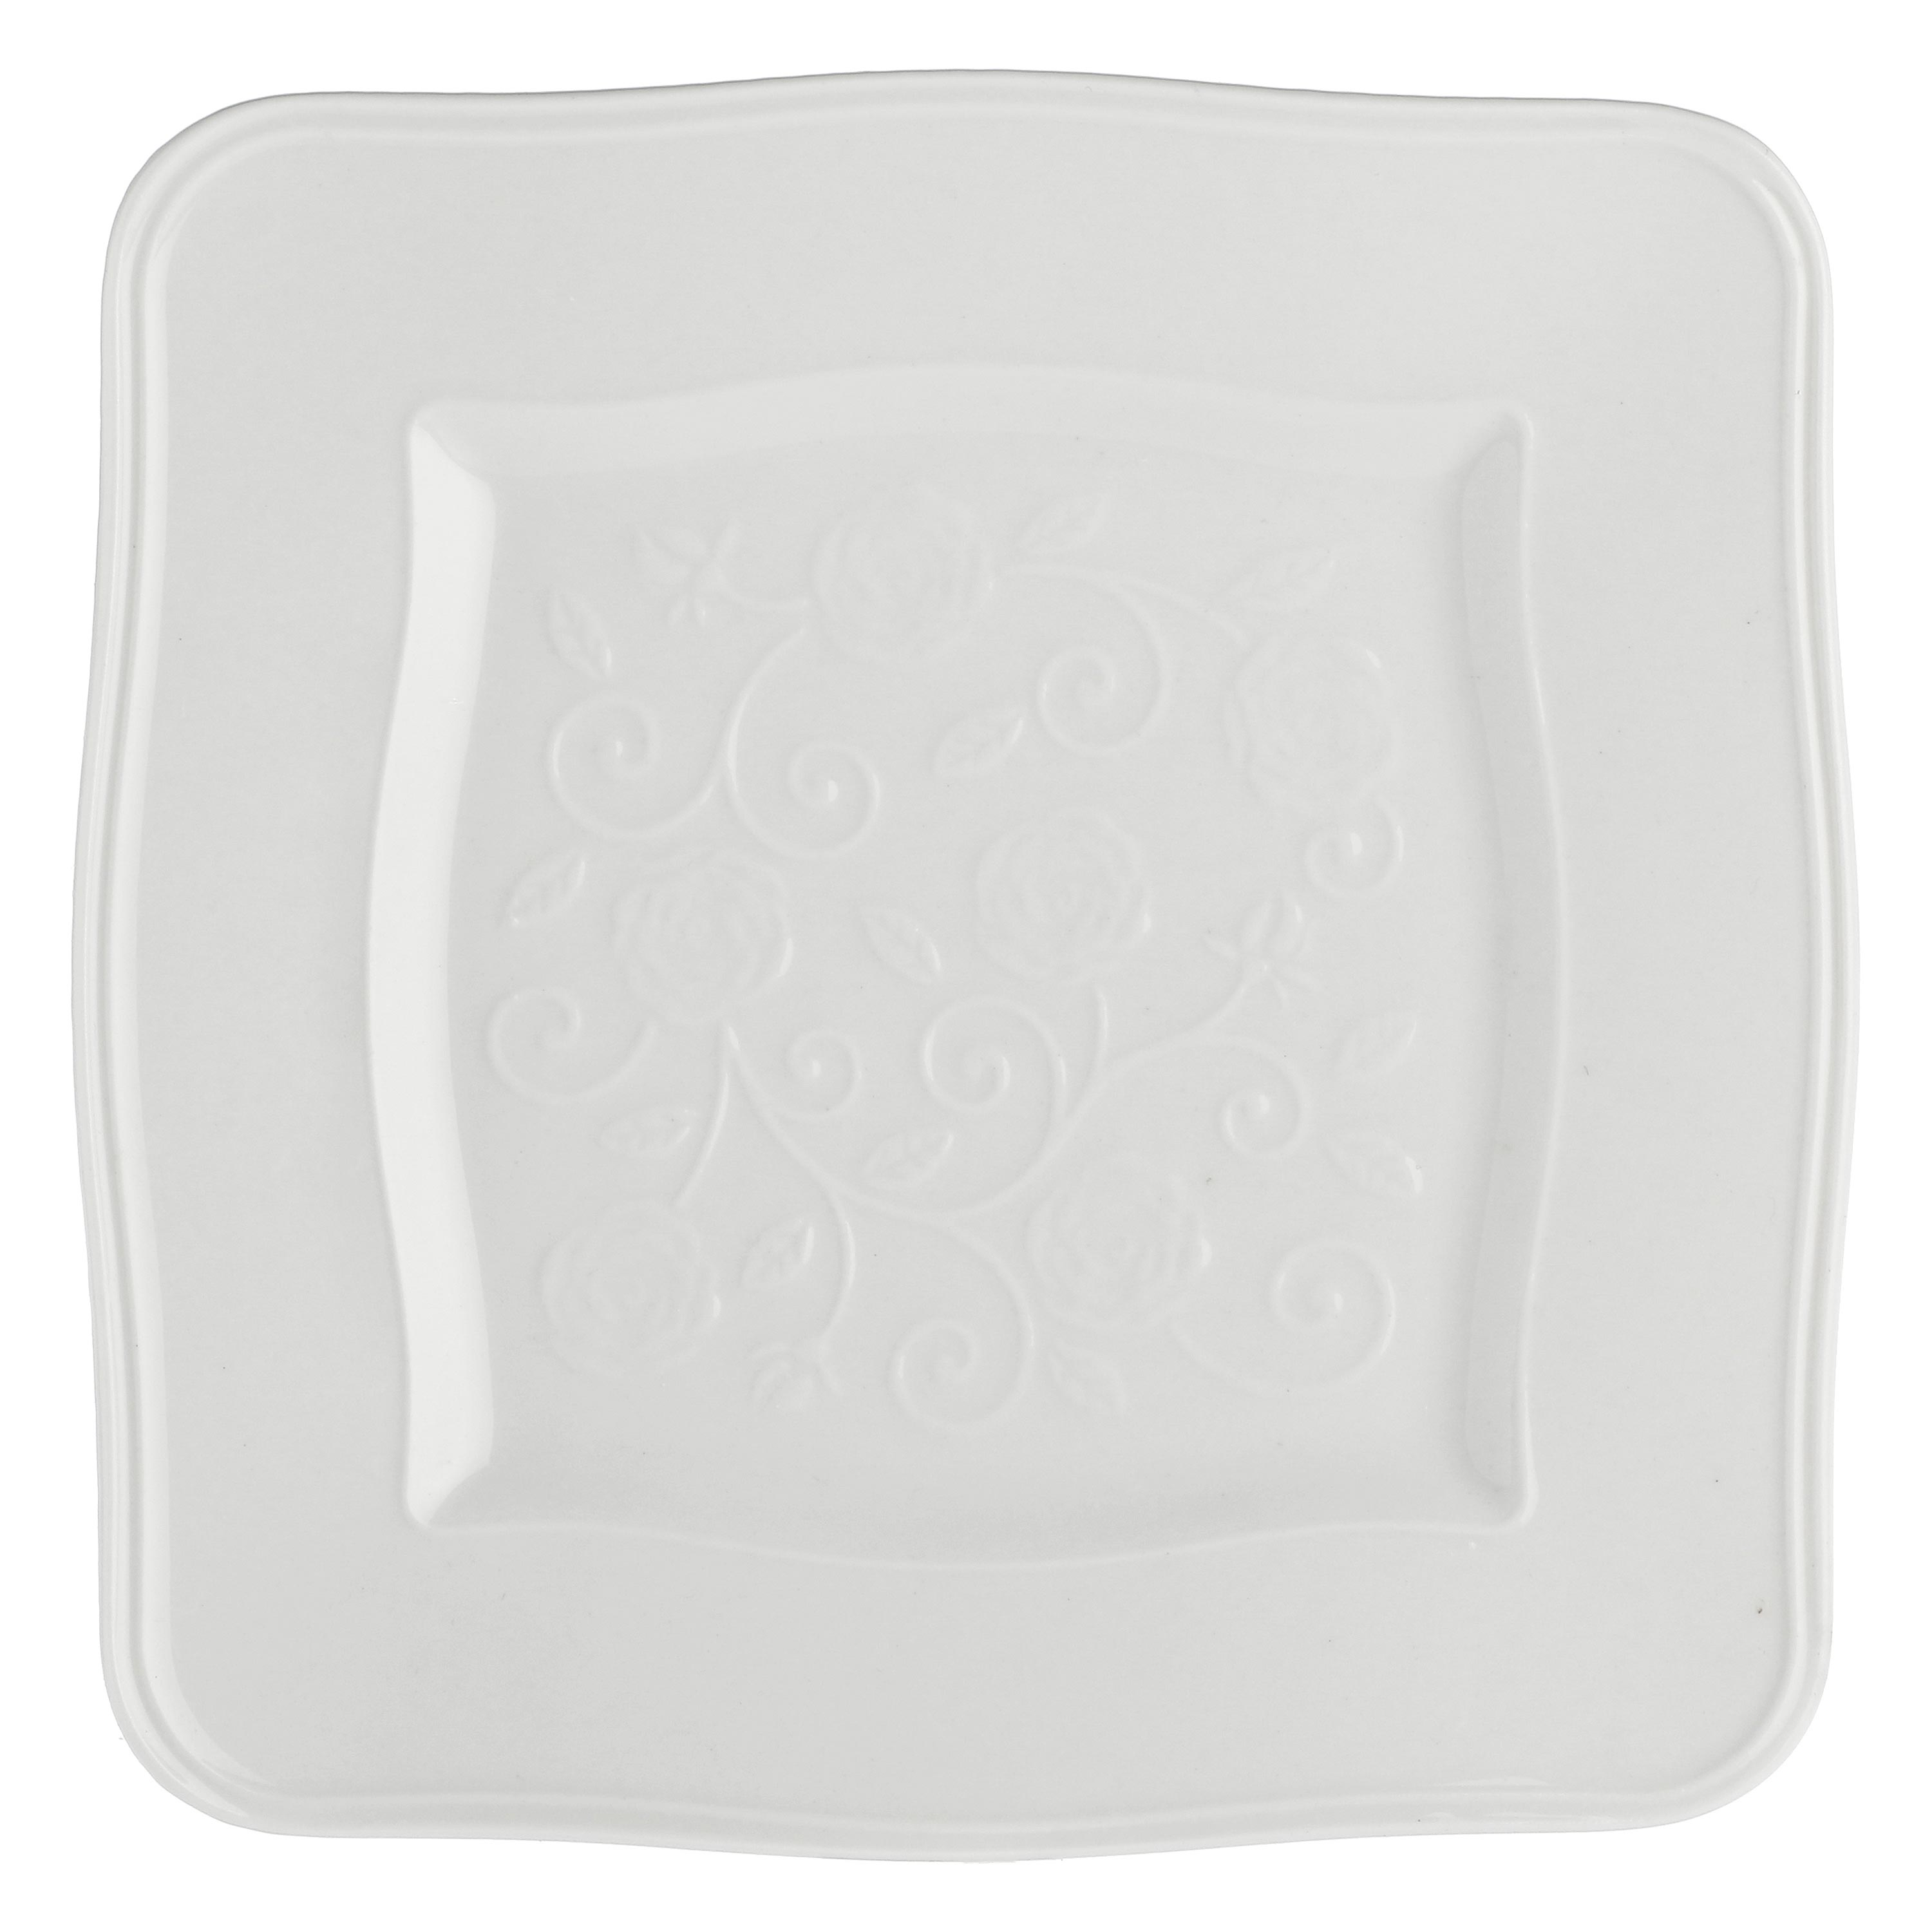 Servizio 18 piatti in porcellana bianca - Mirabel - Best Pet&House